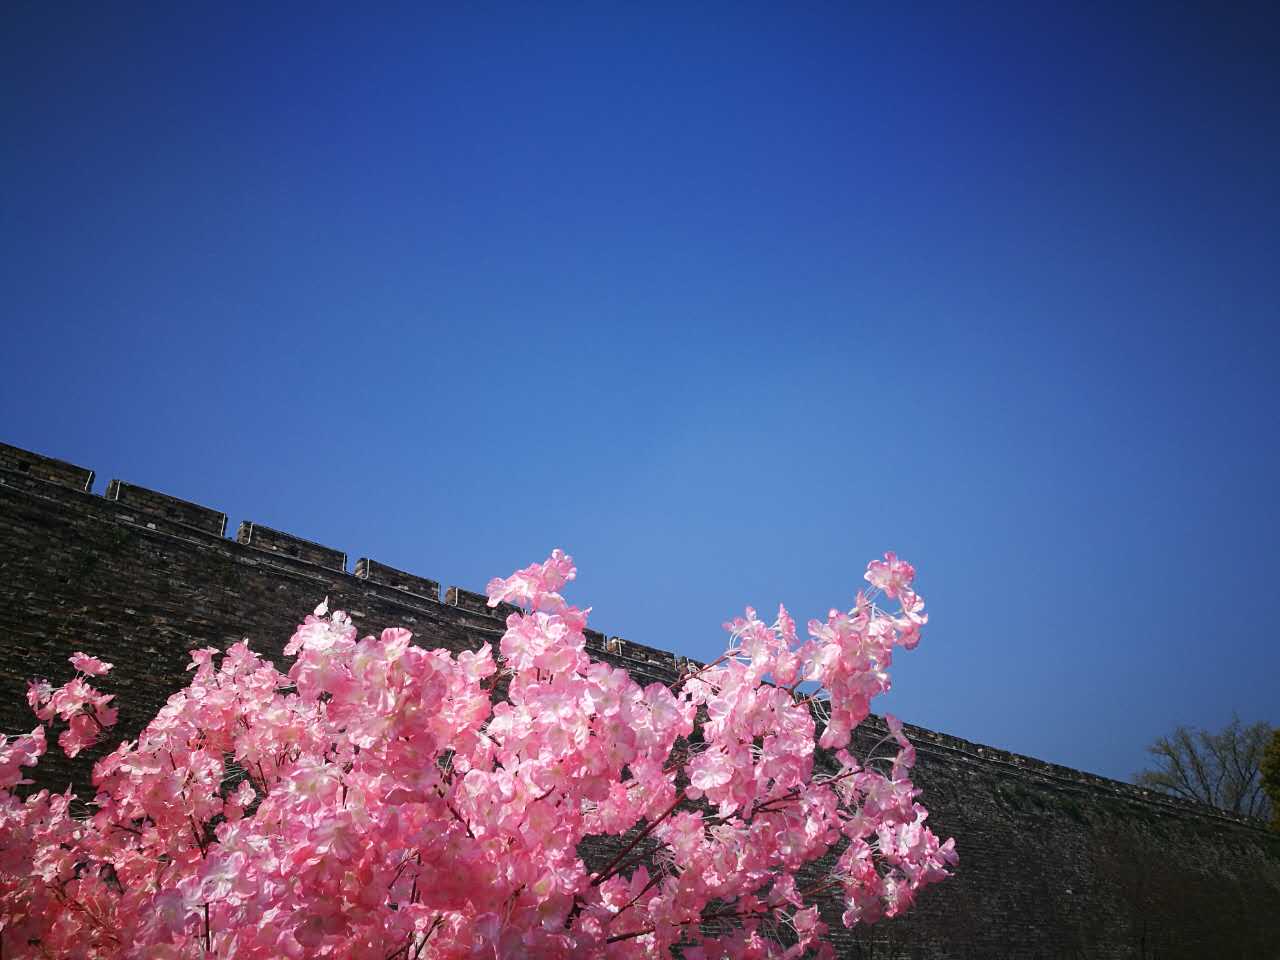 进入到4月，南京的天气灿烂的动人。花也开好了，玄武湖边一片郁郁葱葱。樱花还在随风落，这样的好天气，出门跑跑步、见见老友，岂不快哉！